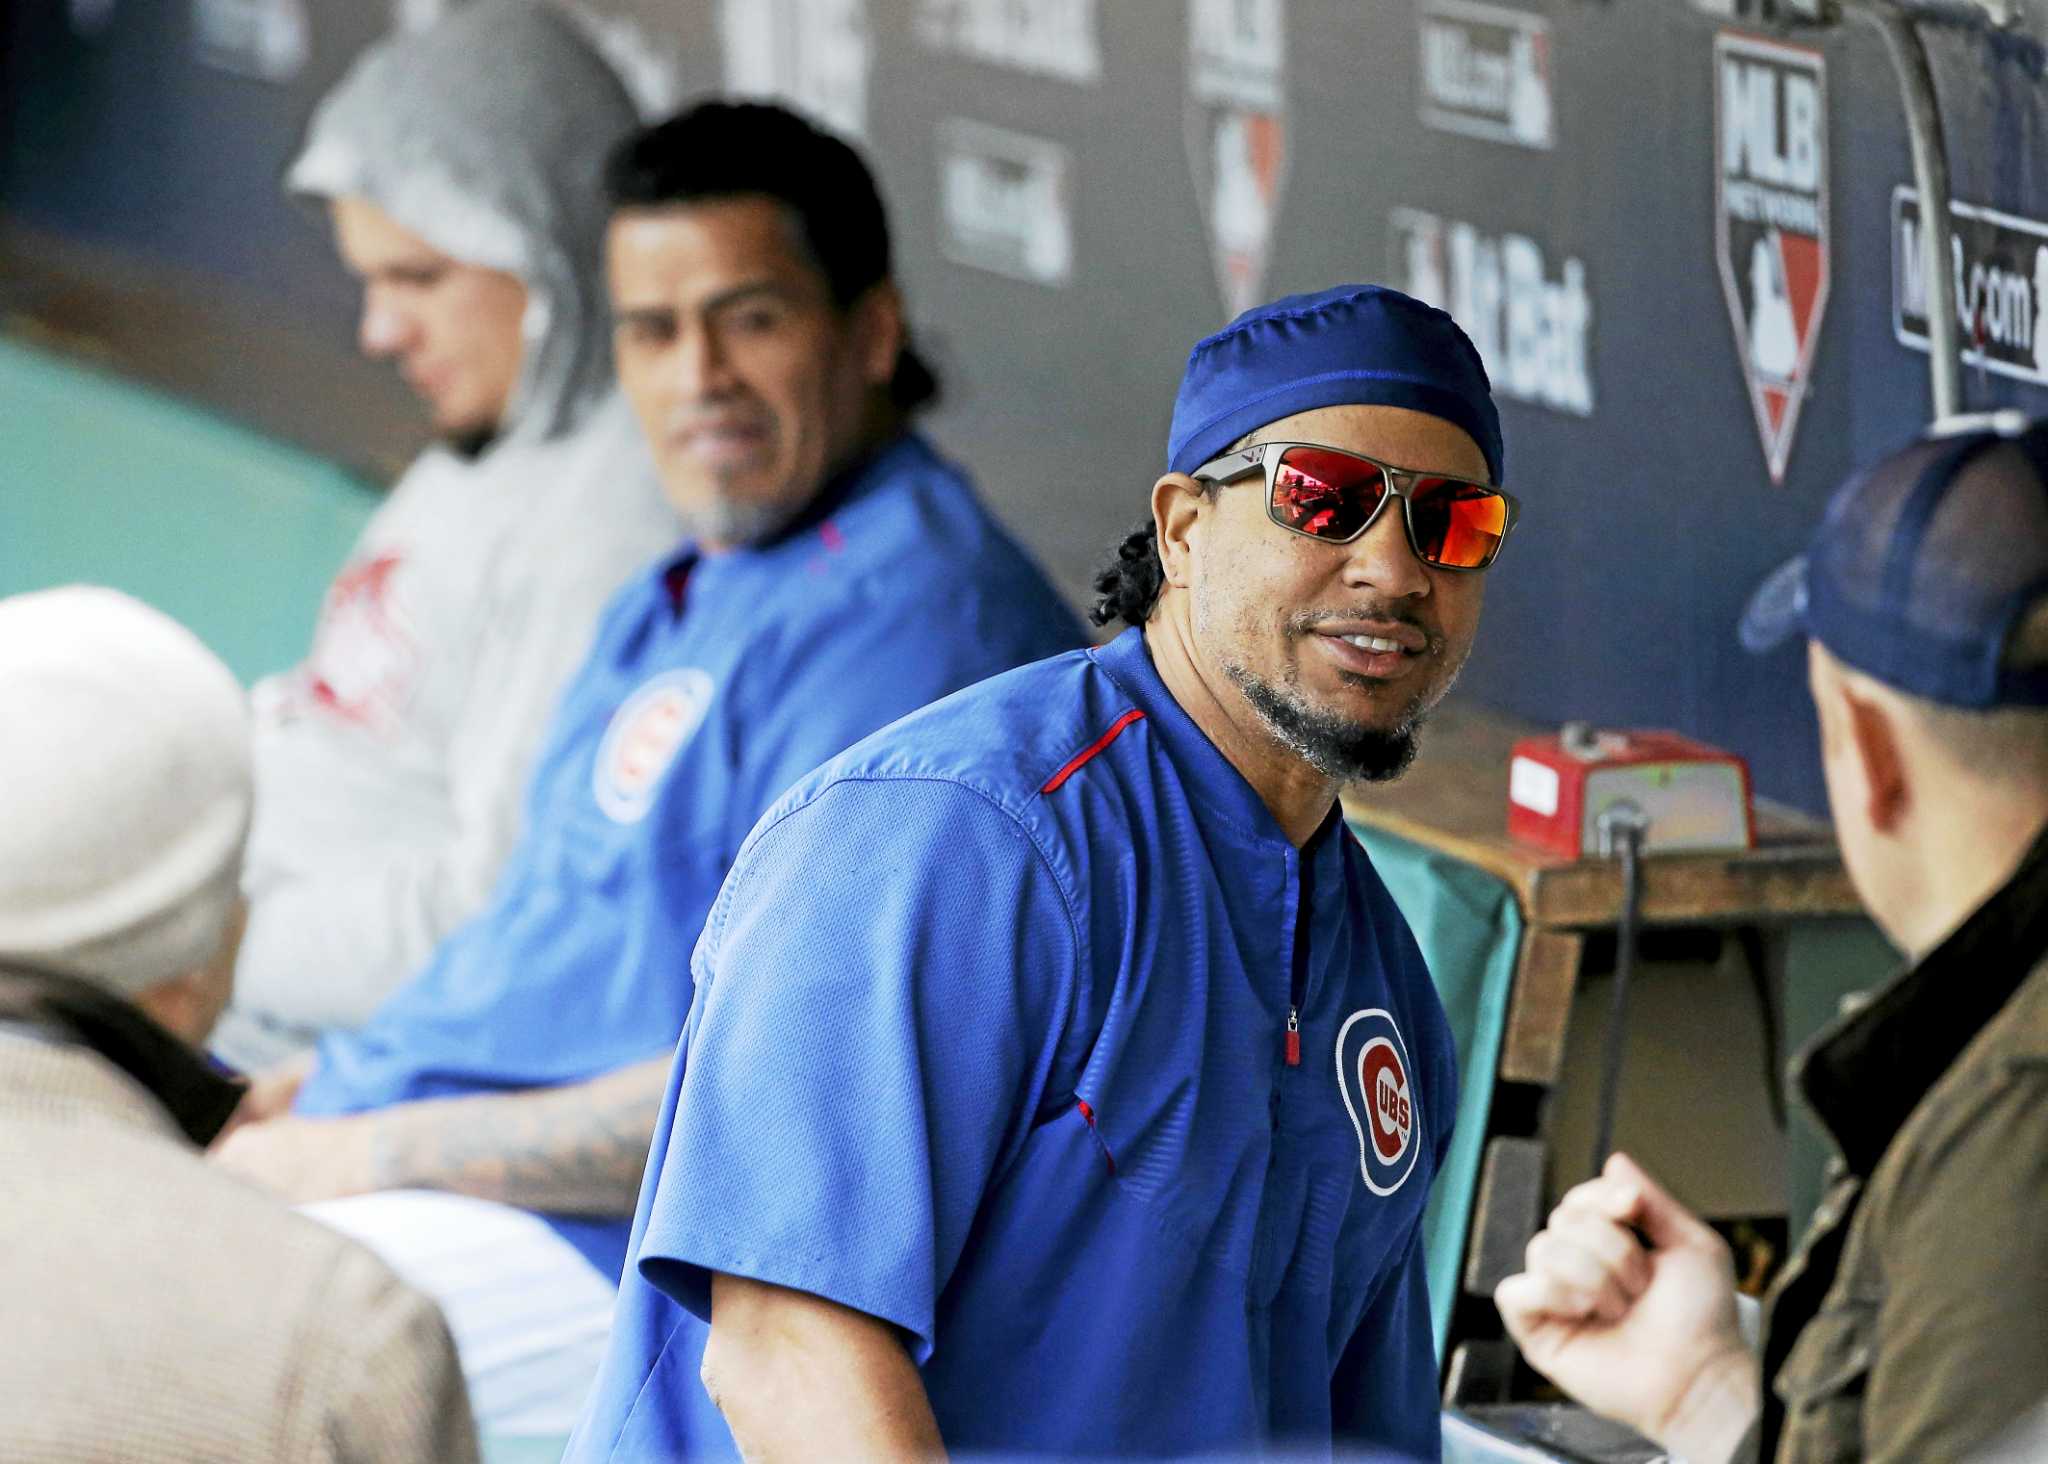 LA Dodgers' Manny Ramirez suspended for 50 games after failing drugs test, MLB